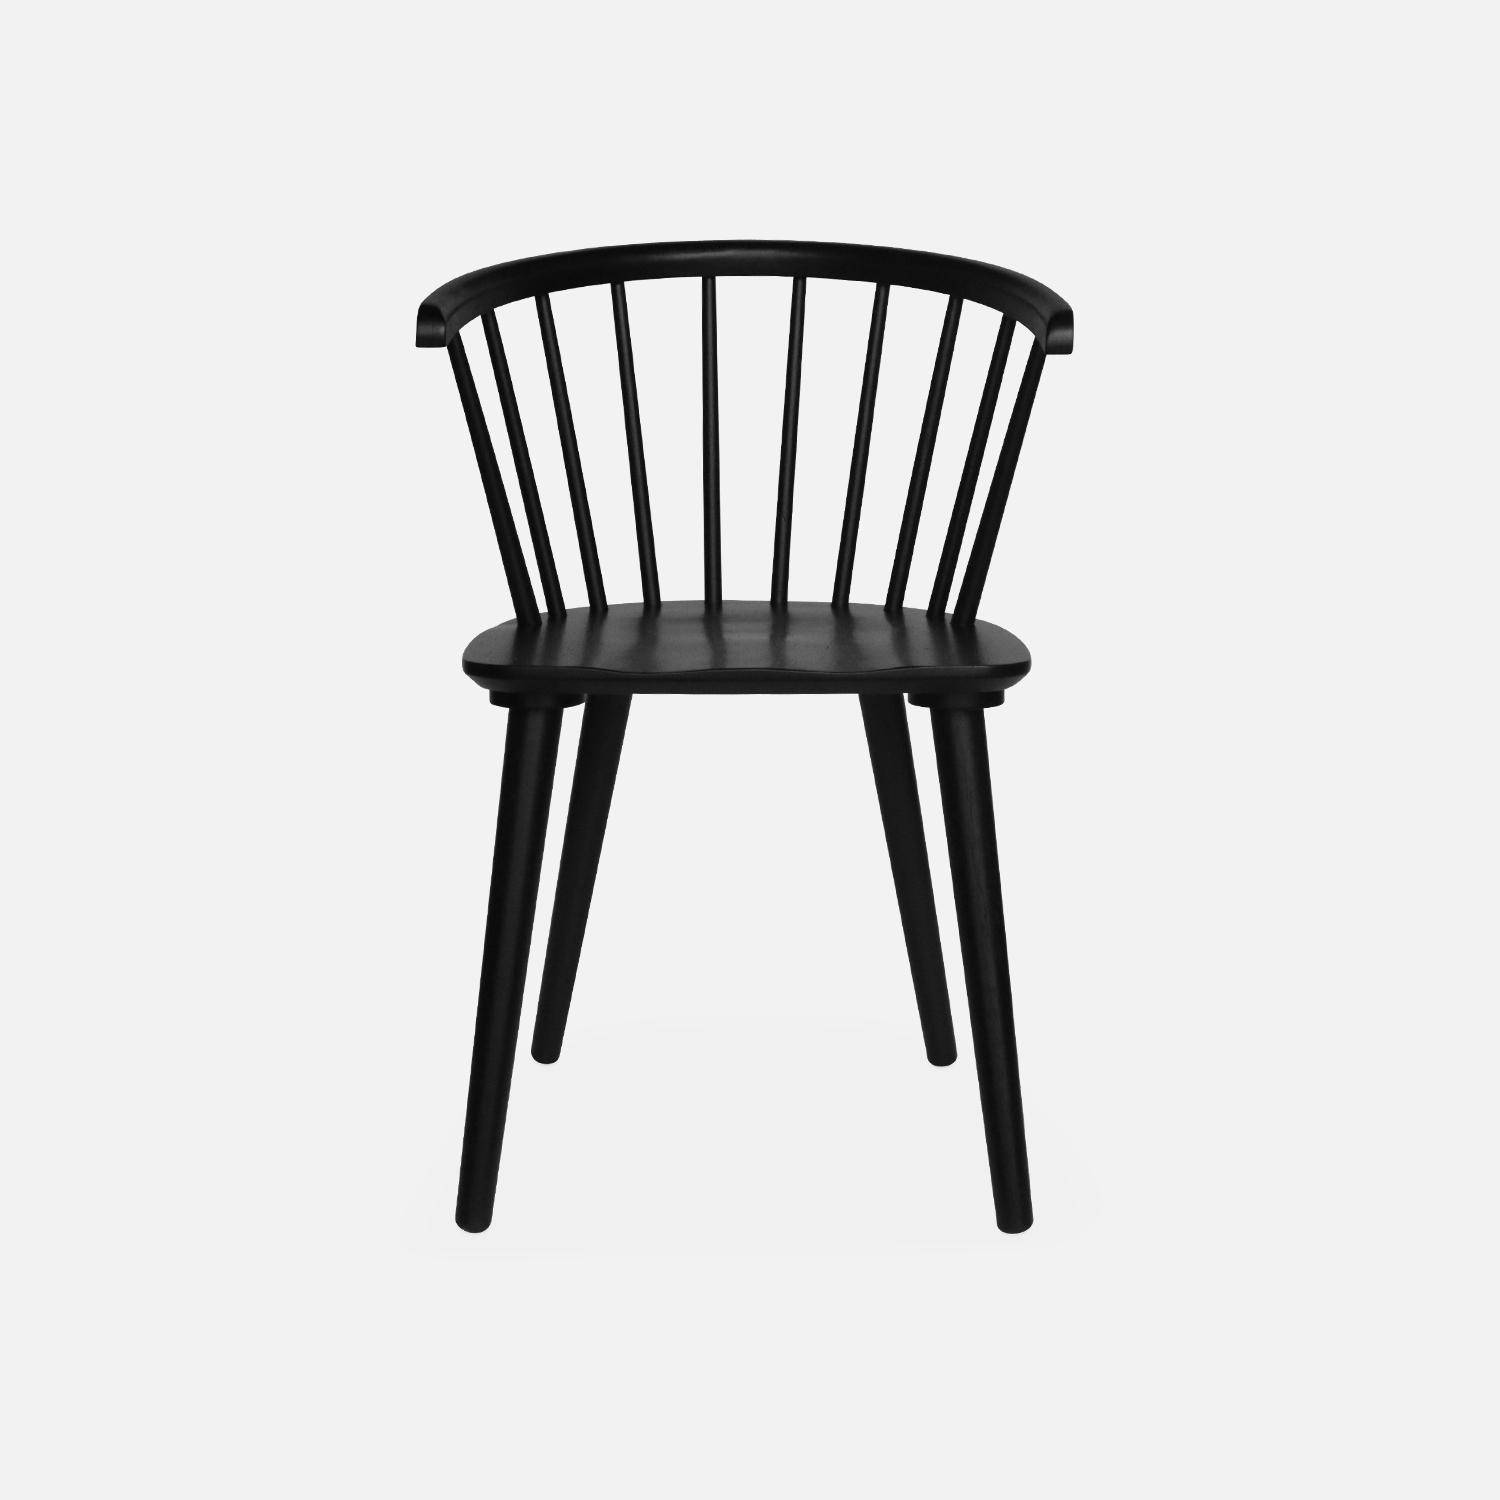 Juego de 2 sillas de bar de madera y contrachapado negro, Paula, An 51 x Pr 53 x Al 75cm,sweeek,Photo5